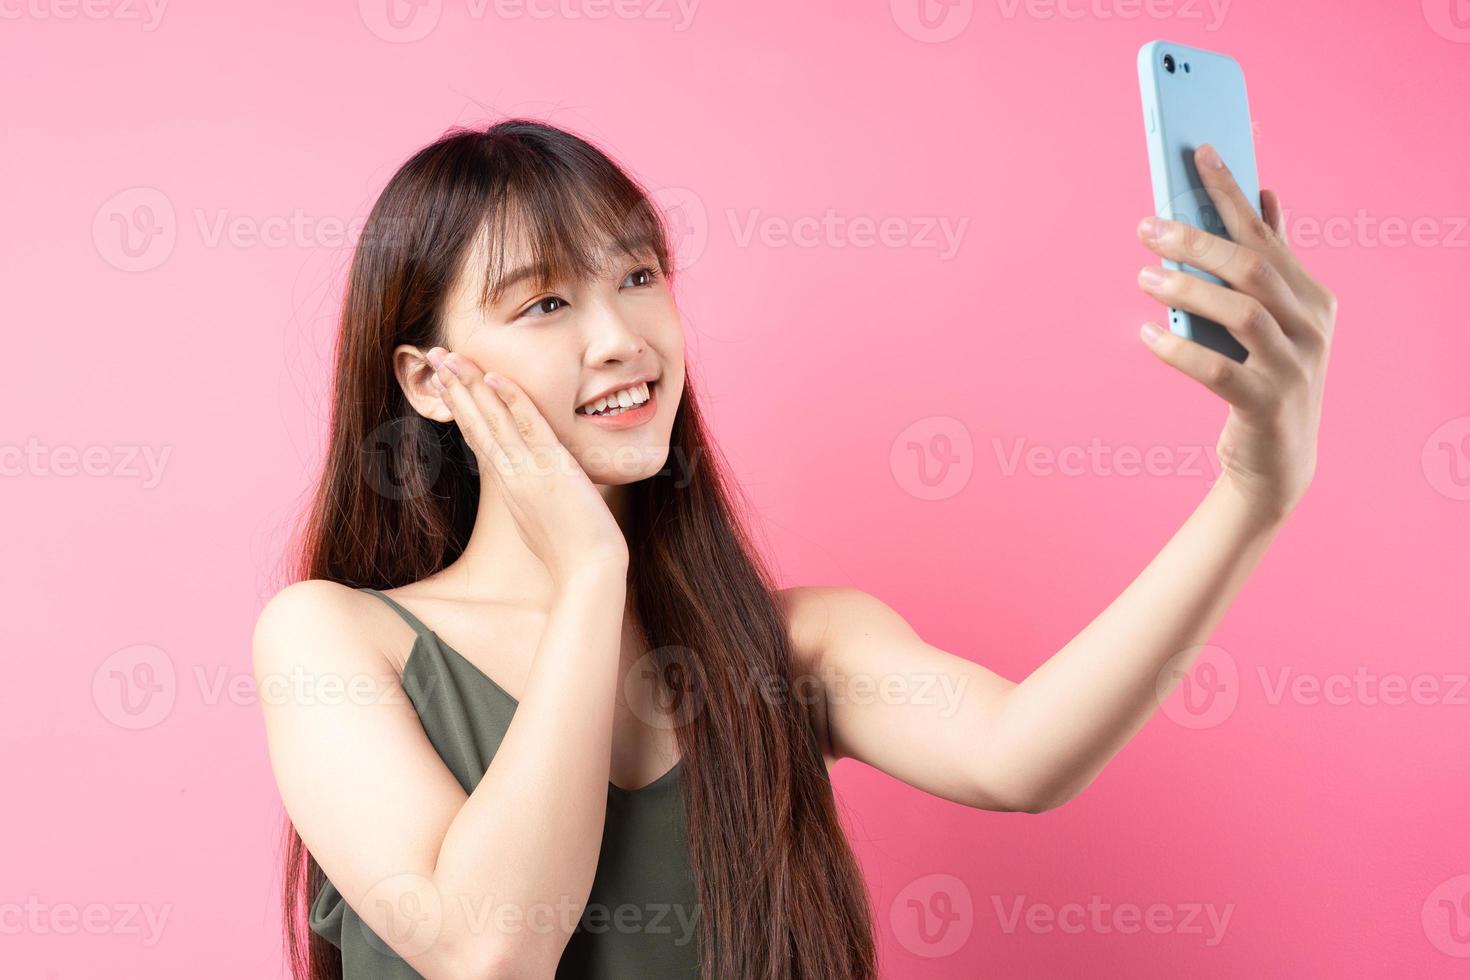 jeune fille asiatique posant sur un fond rose photo